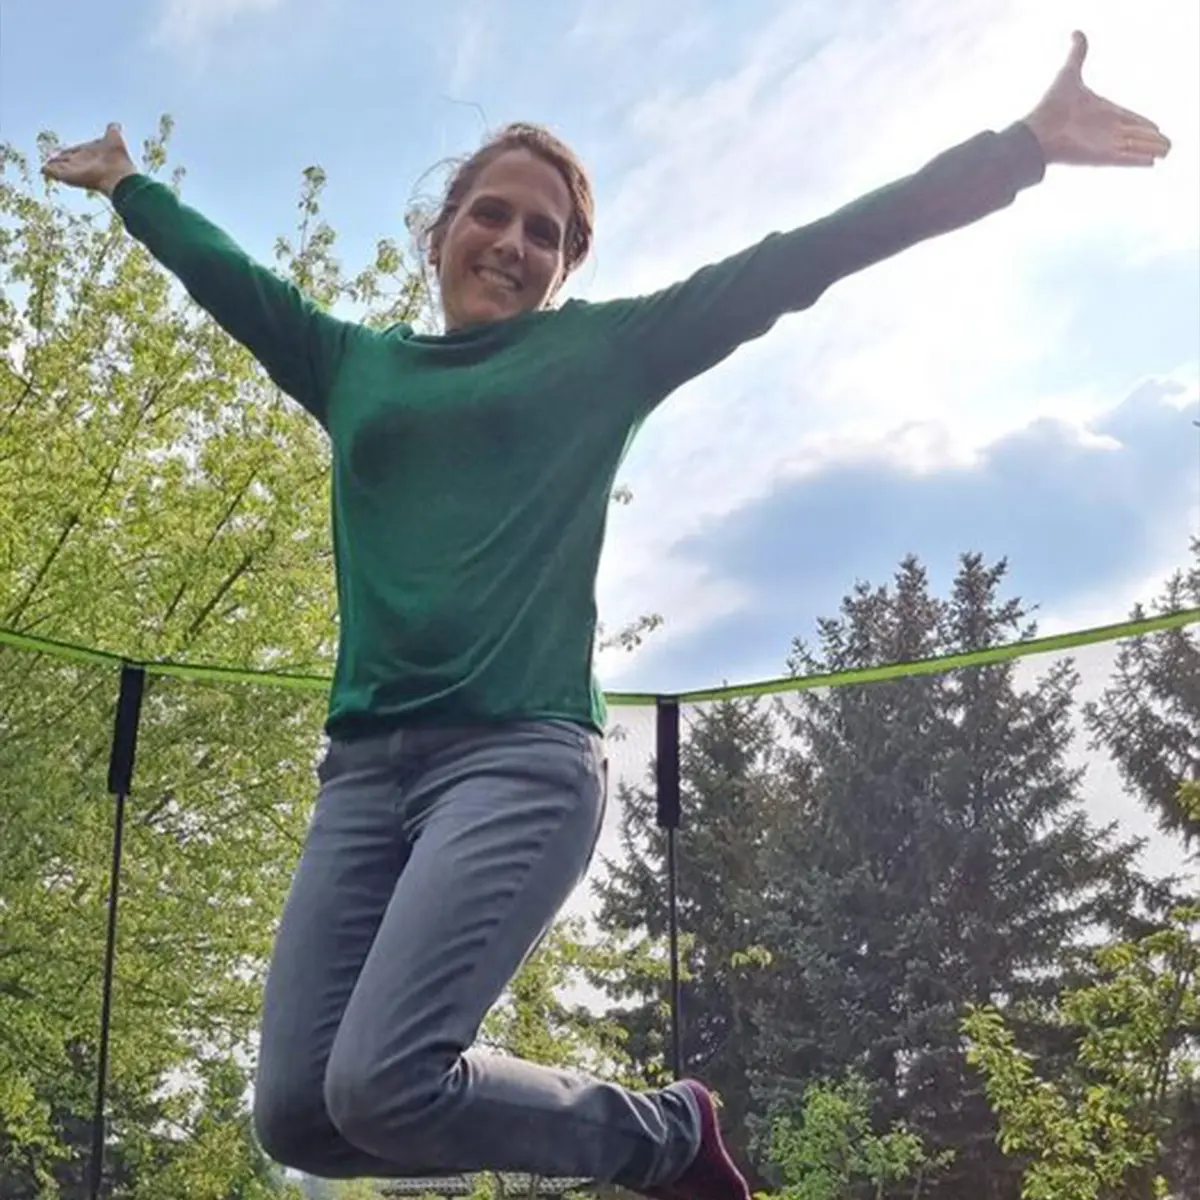 Ann Katrin Reiter auf einem Trampolin springend